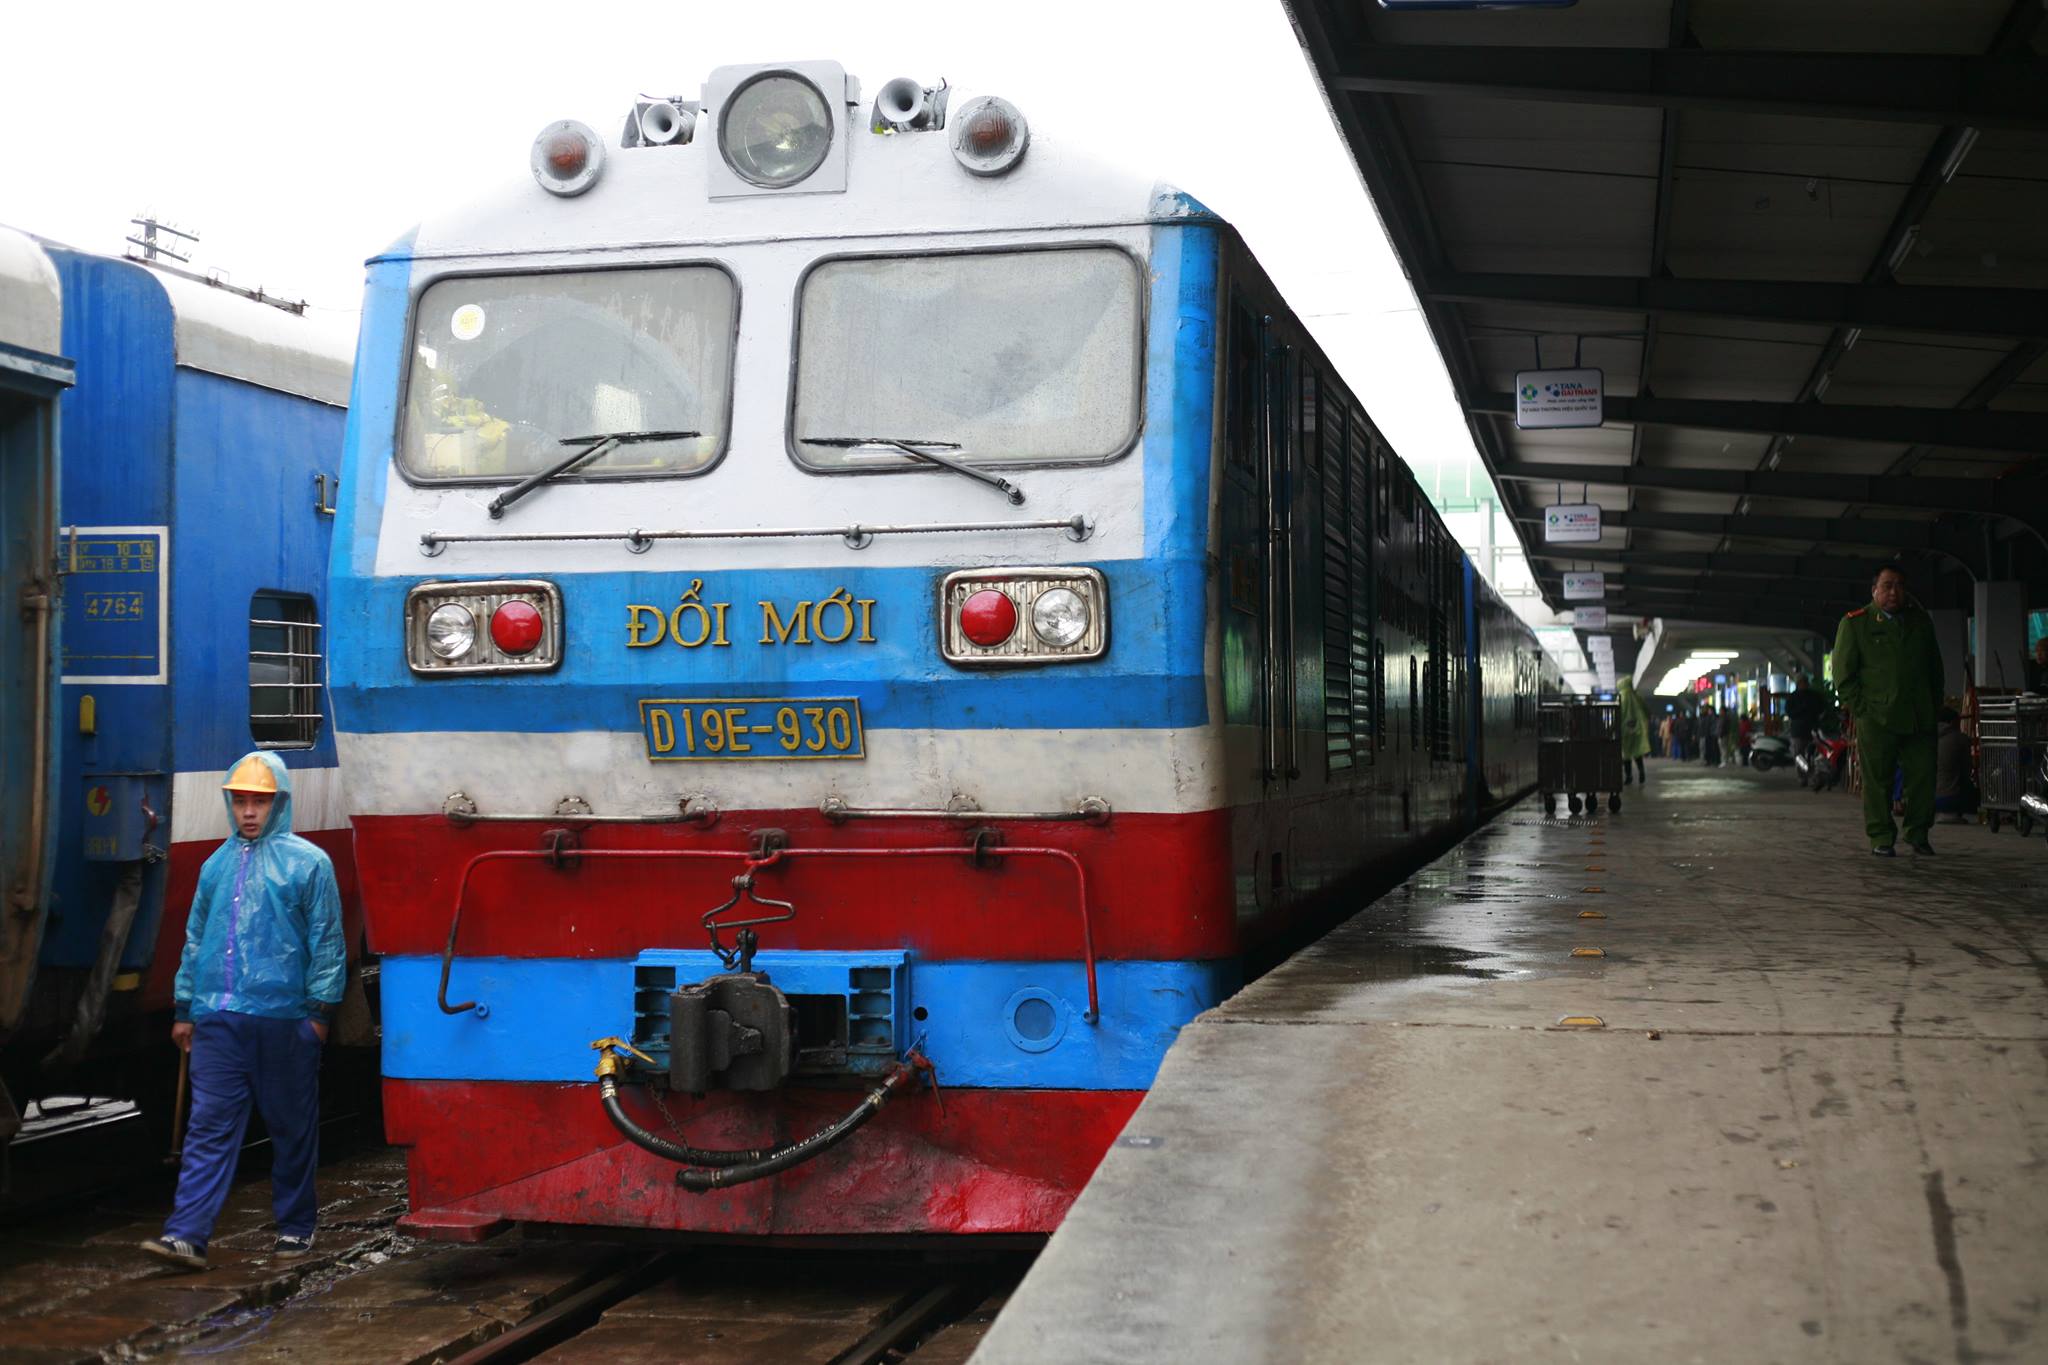 Lãnh đạo Đường sắt không nhận lỗi vụ mua toa tàu cũ từ Trung Quốc dù Bộ GTVT đã yêu cầu - Ảnh: Hải Thanh